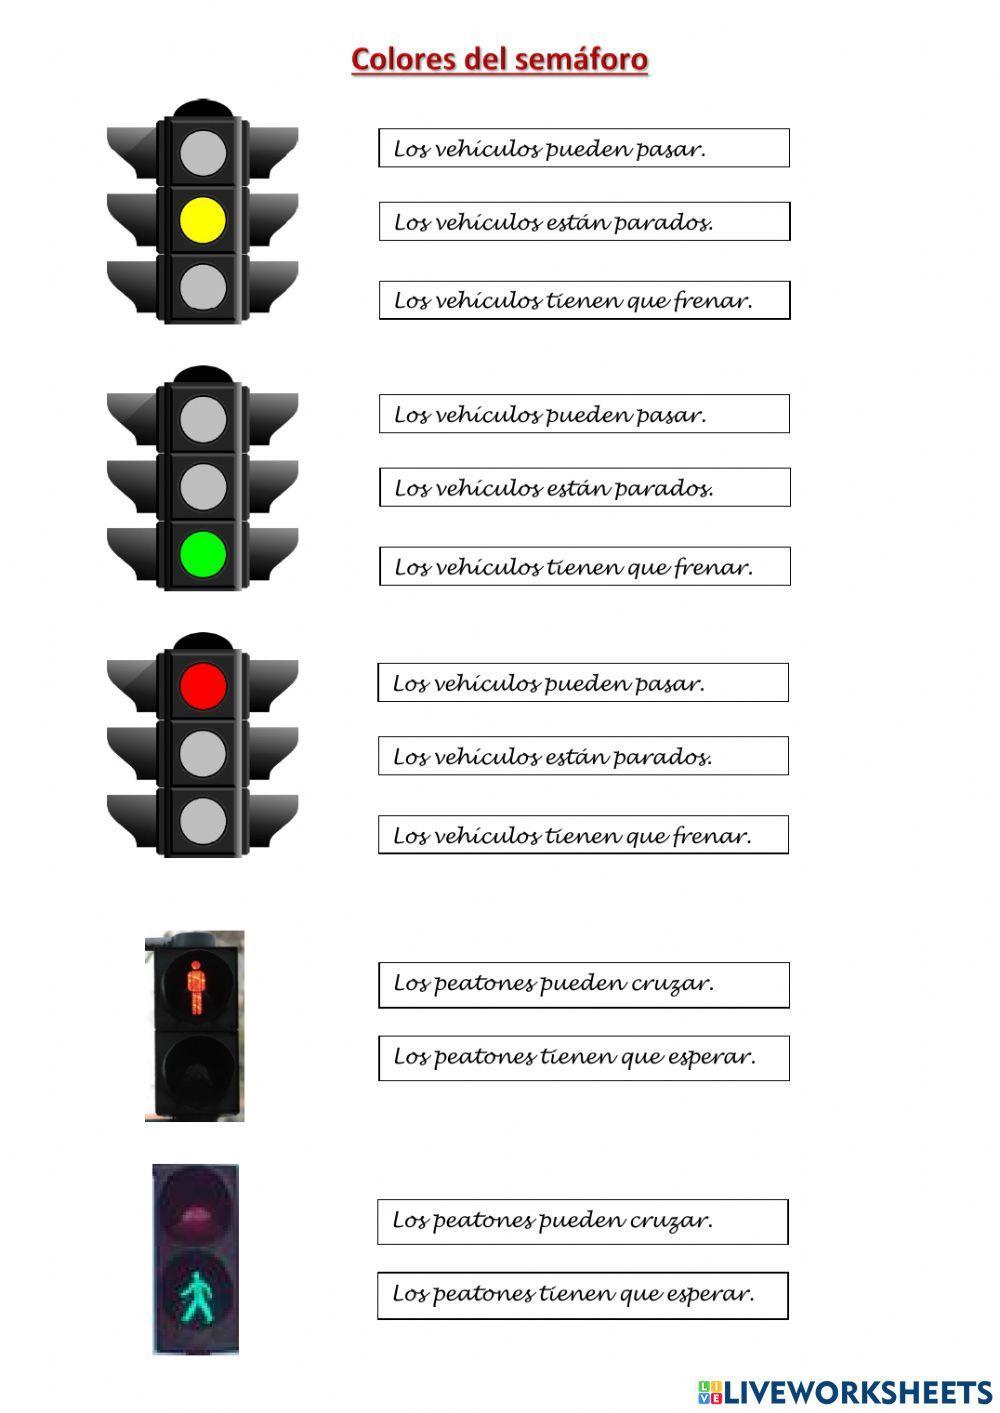 Colores del semáforo